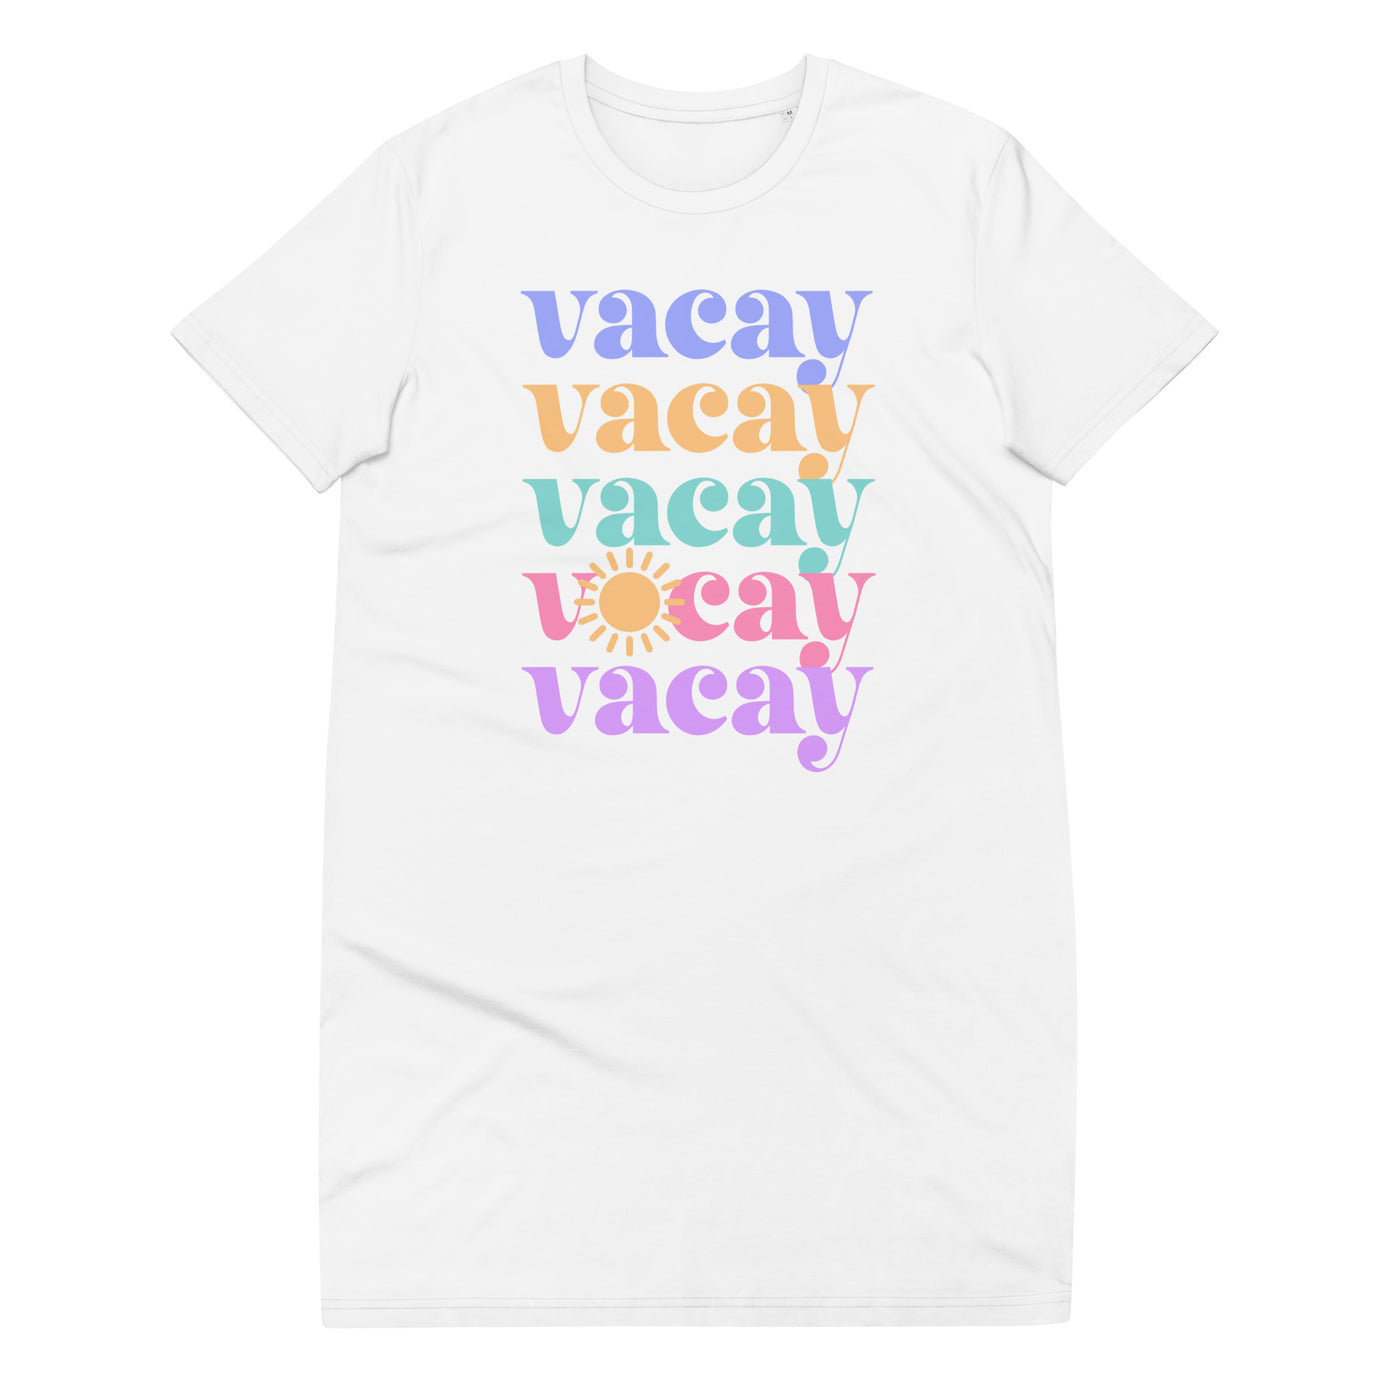 'Vacay Vacay' T-Shirt Dress